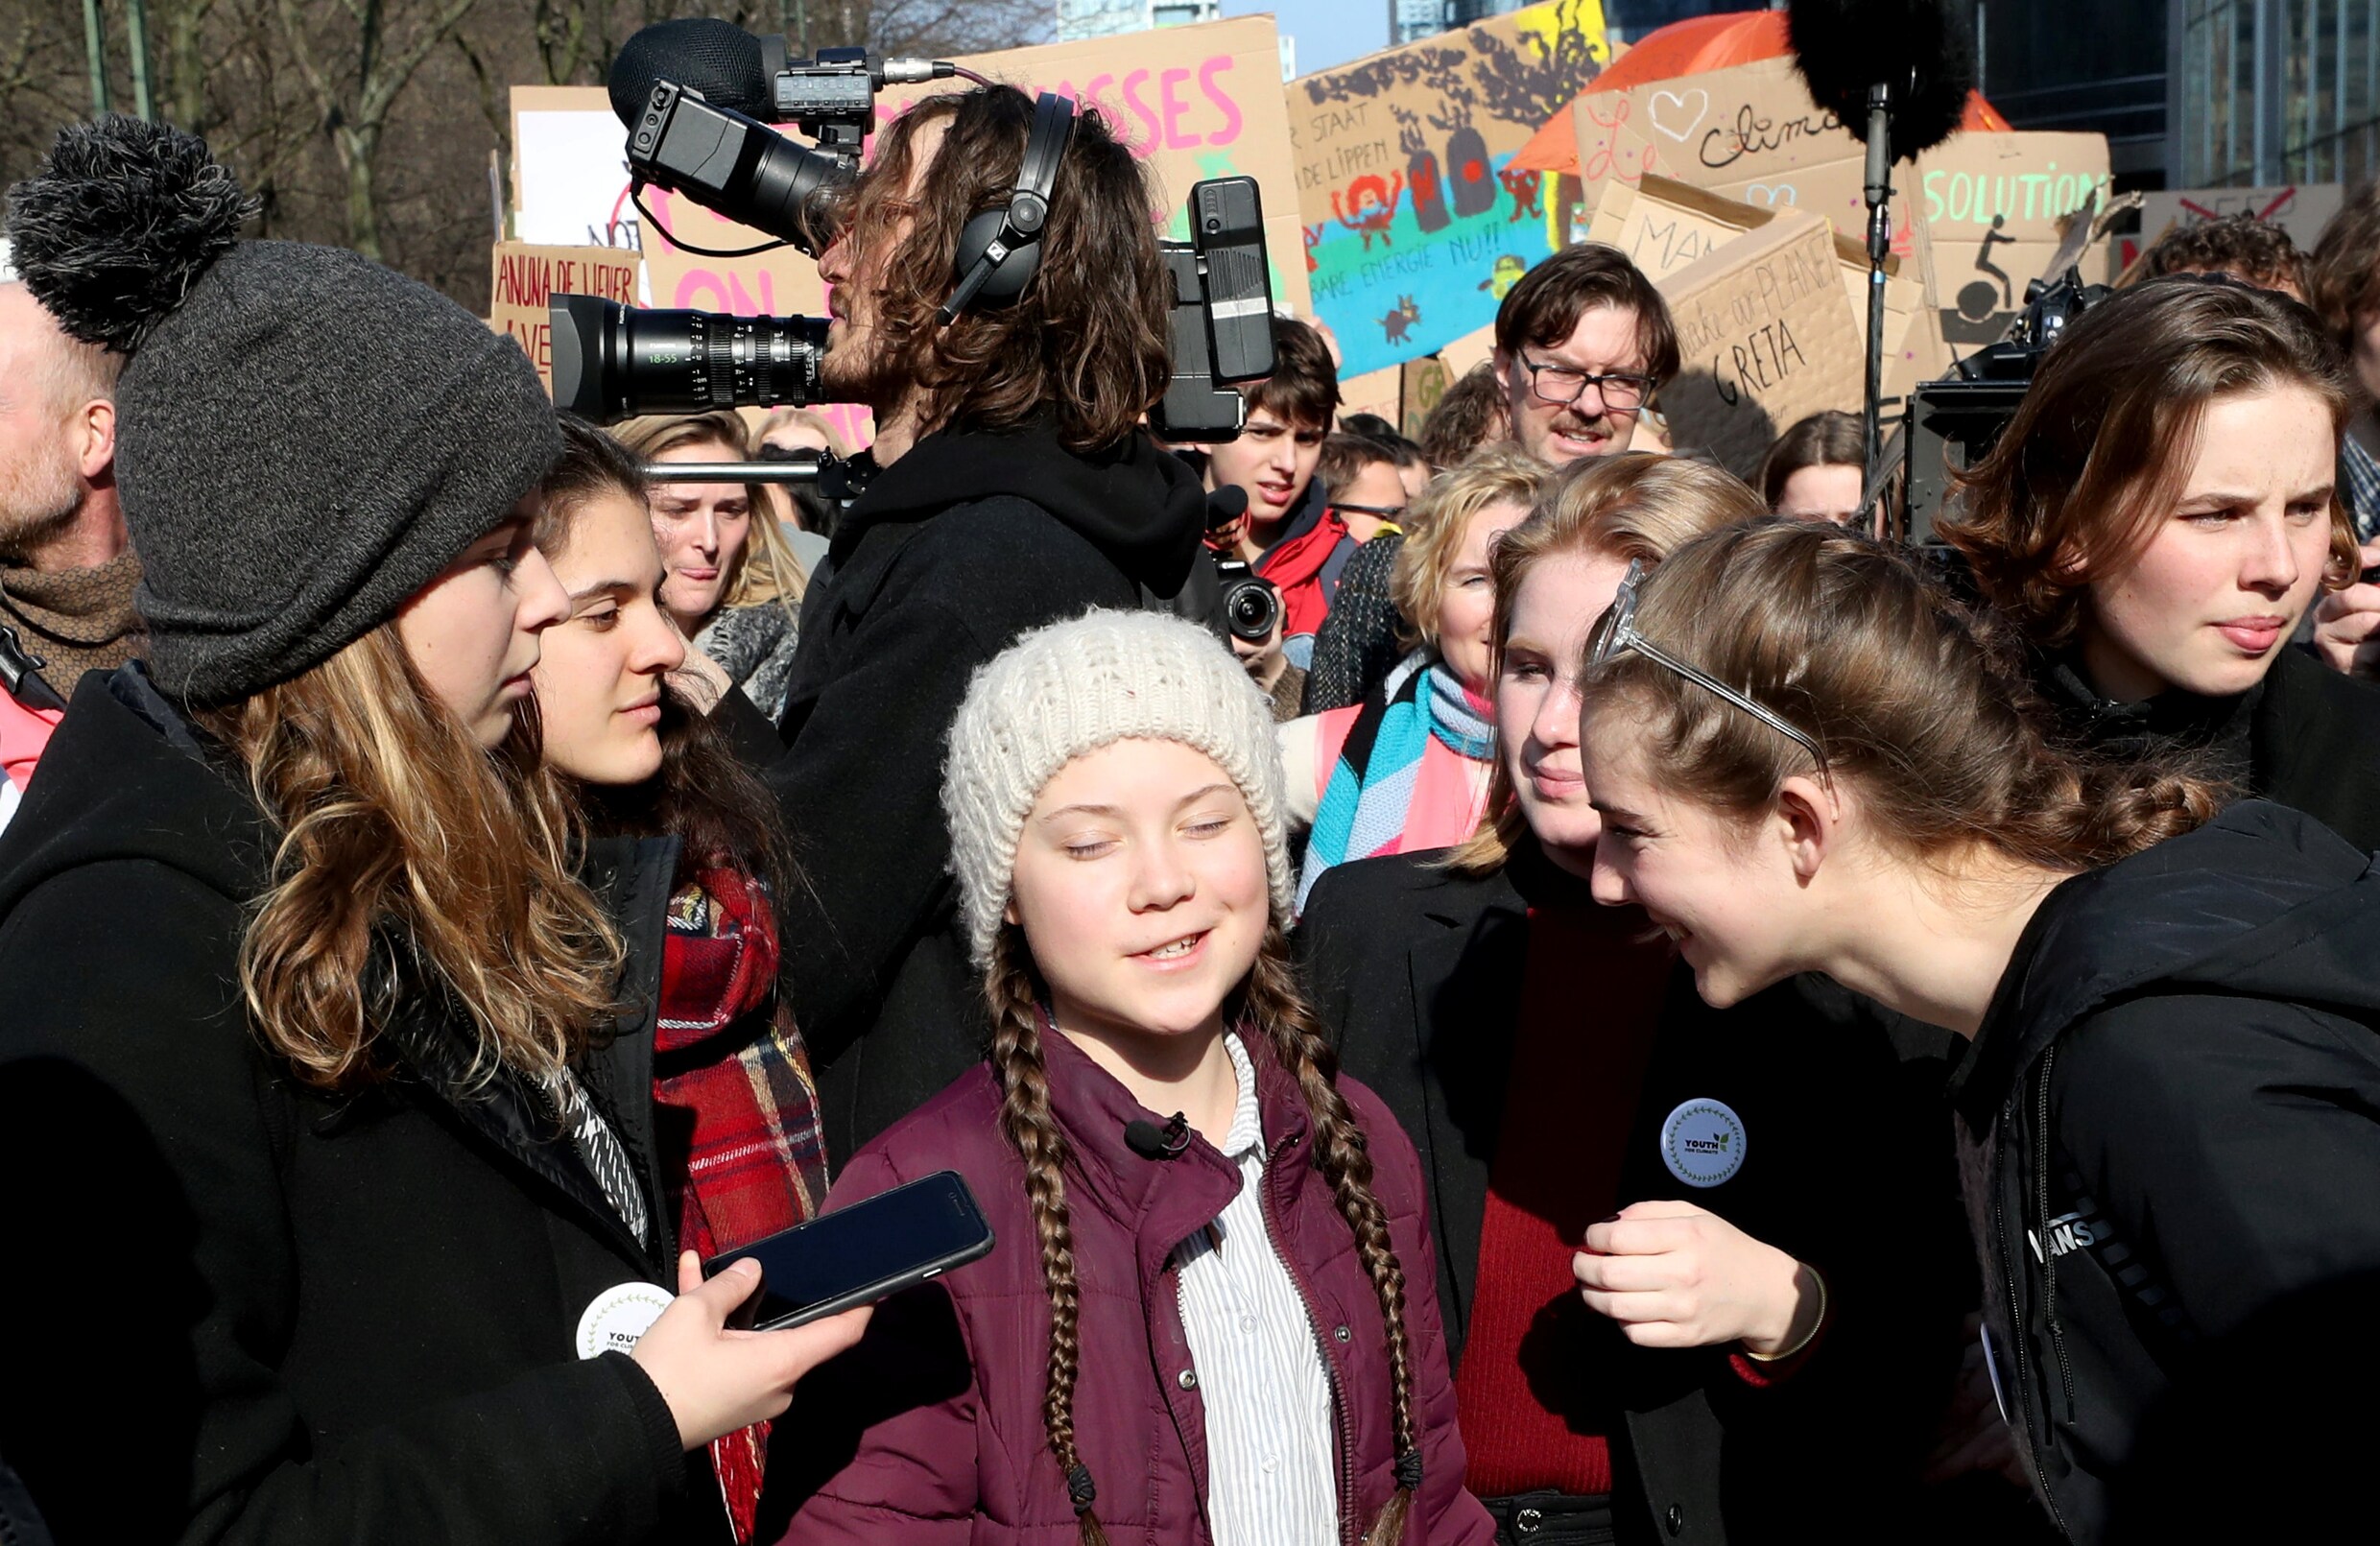 7.500 klimaatbetogers door Brussel, Greta Thunberg onder politiebegeleiding